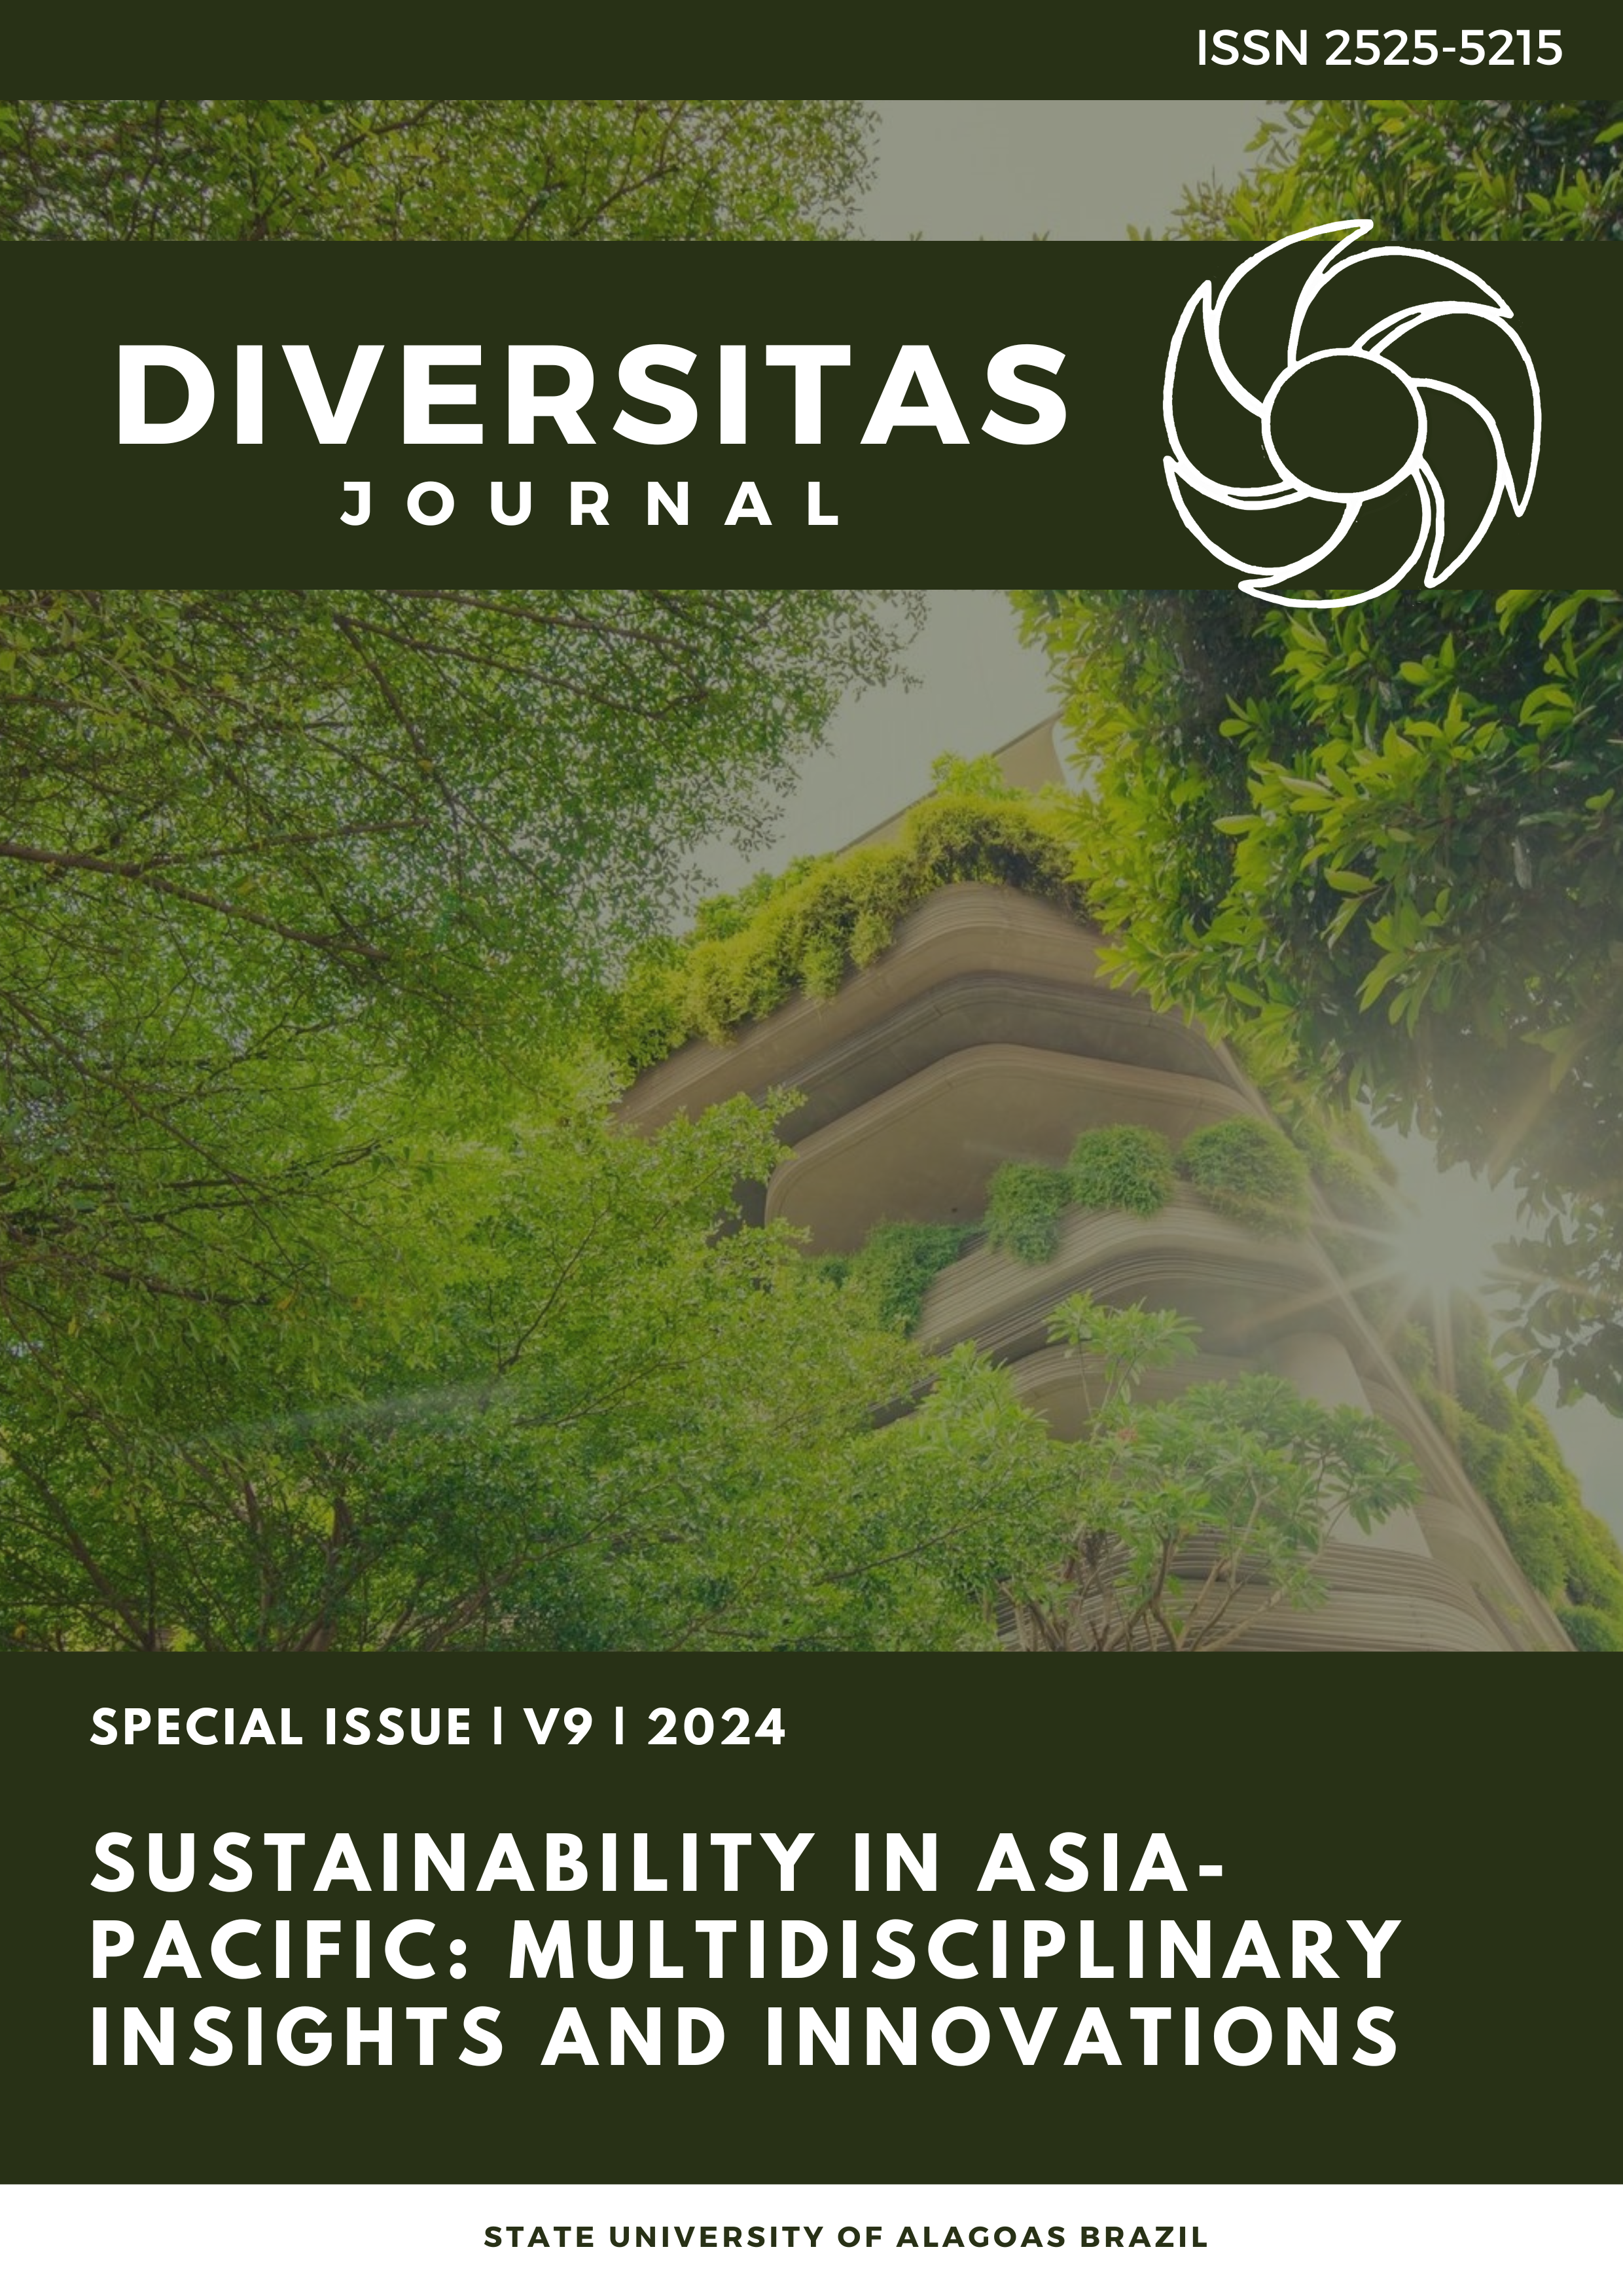 					Visualizar v. 9 n. Special1 (2024): Sustentabilidade na Ásia-Pacífico: insights e inovações multidisciplinares
				